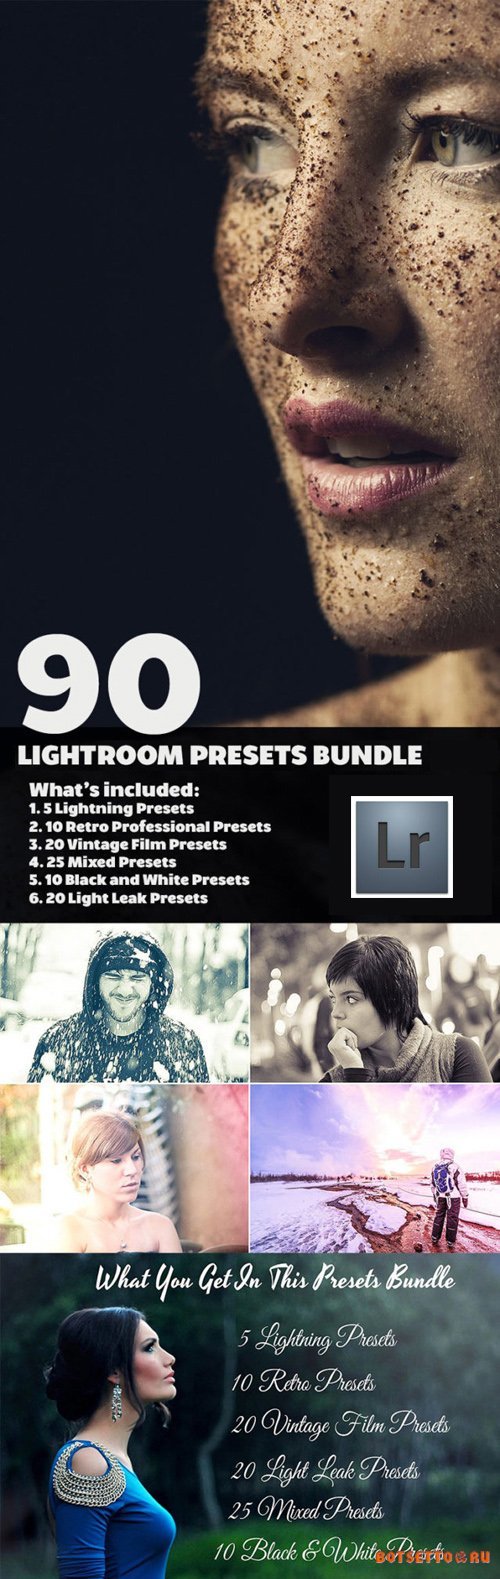 90 Lightroom Presets Bundle